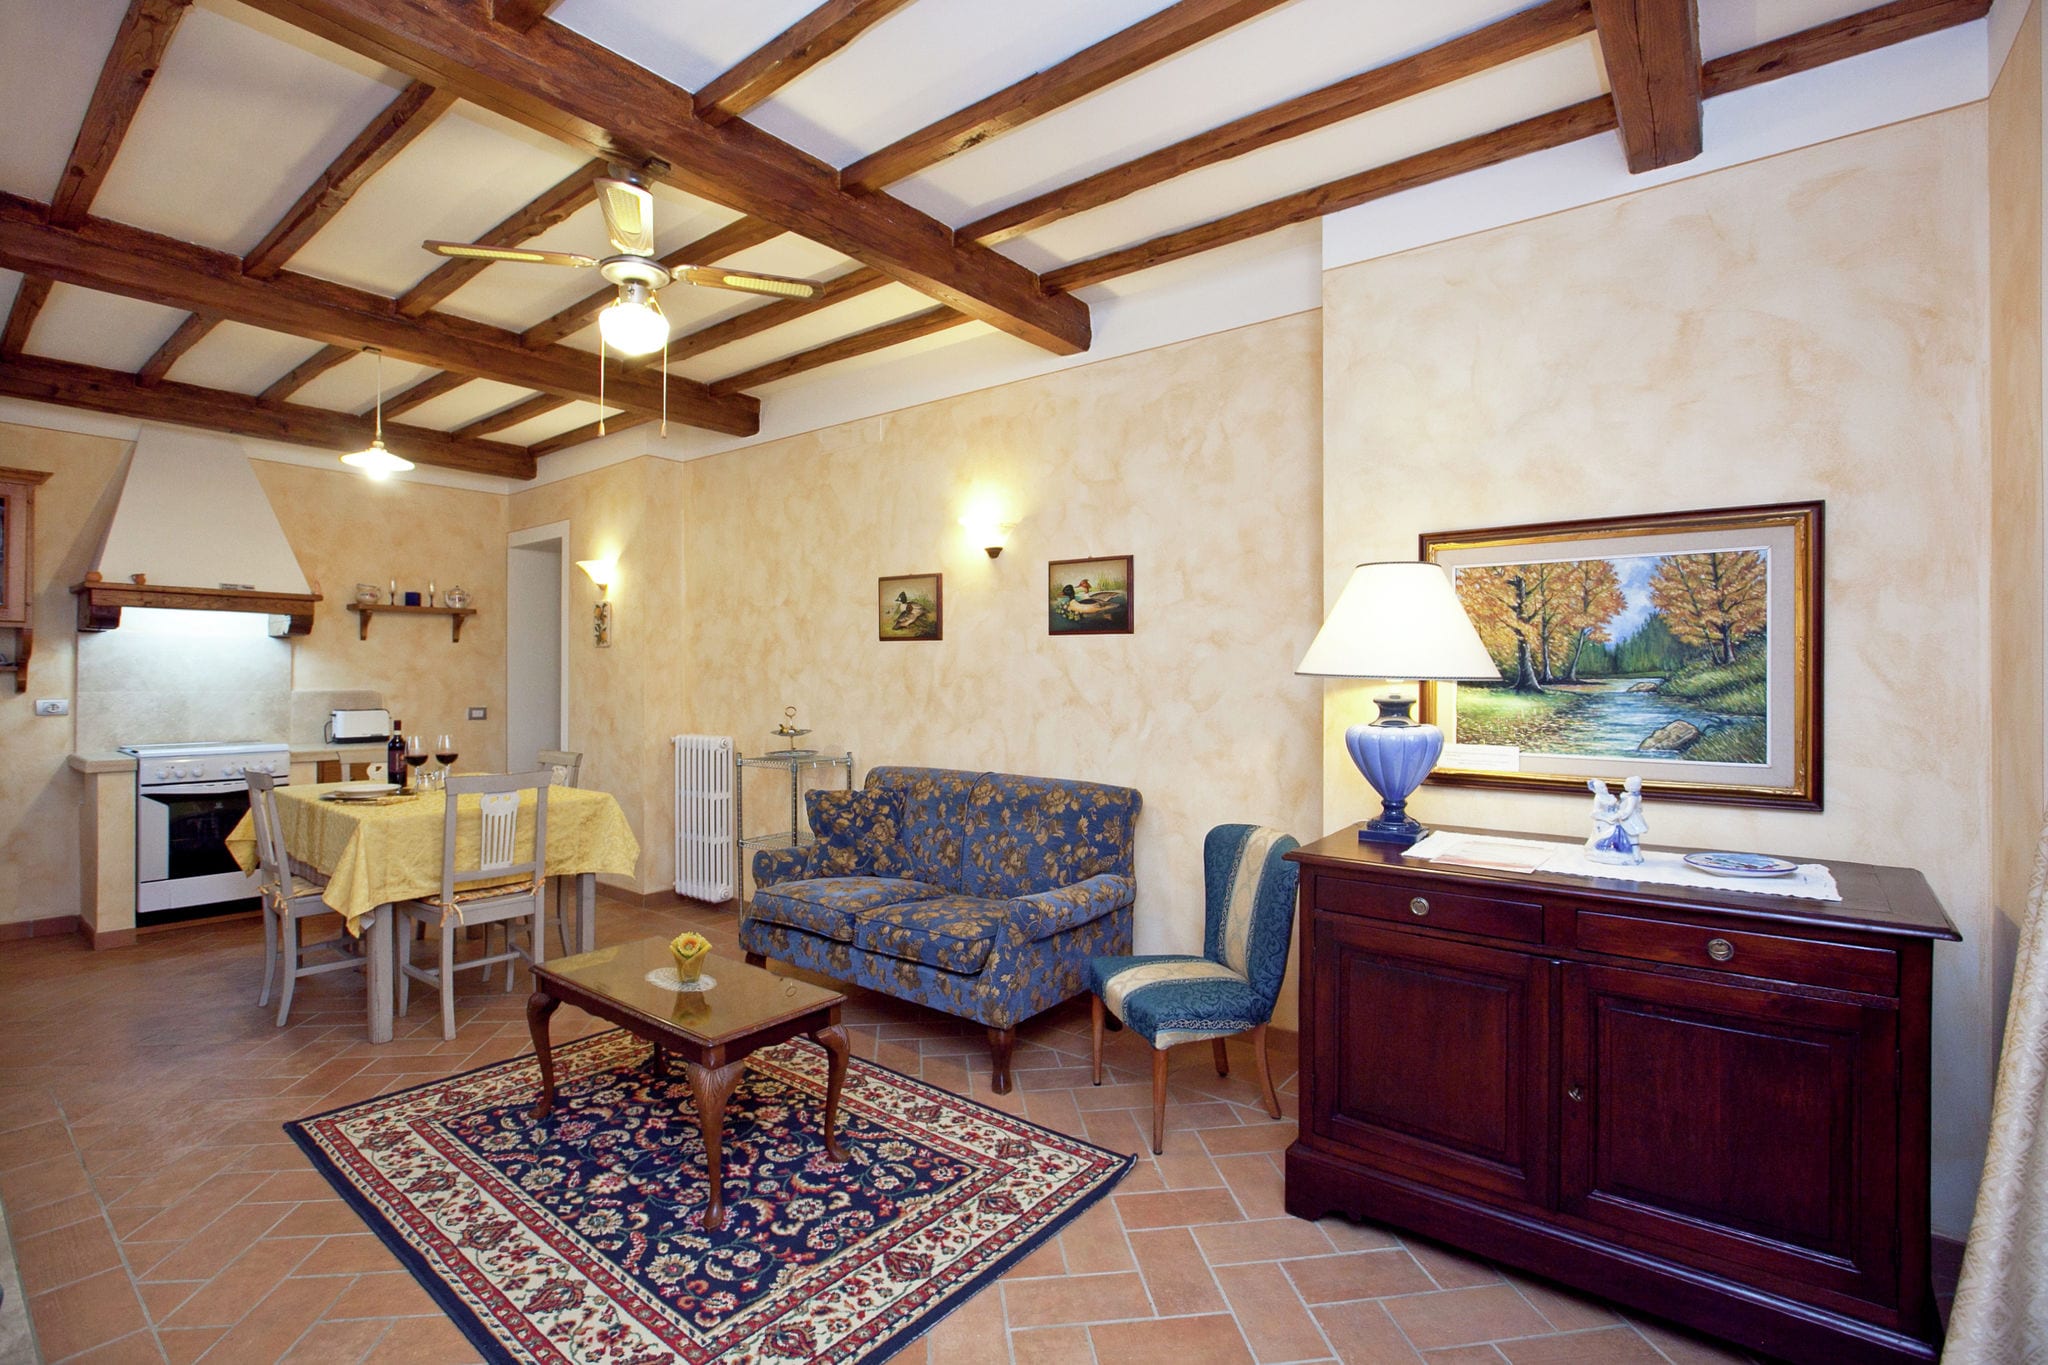 Appartement in Toscaanse stijl met uitzicht op de heuvels en dichtbij een dorpje